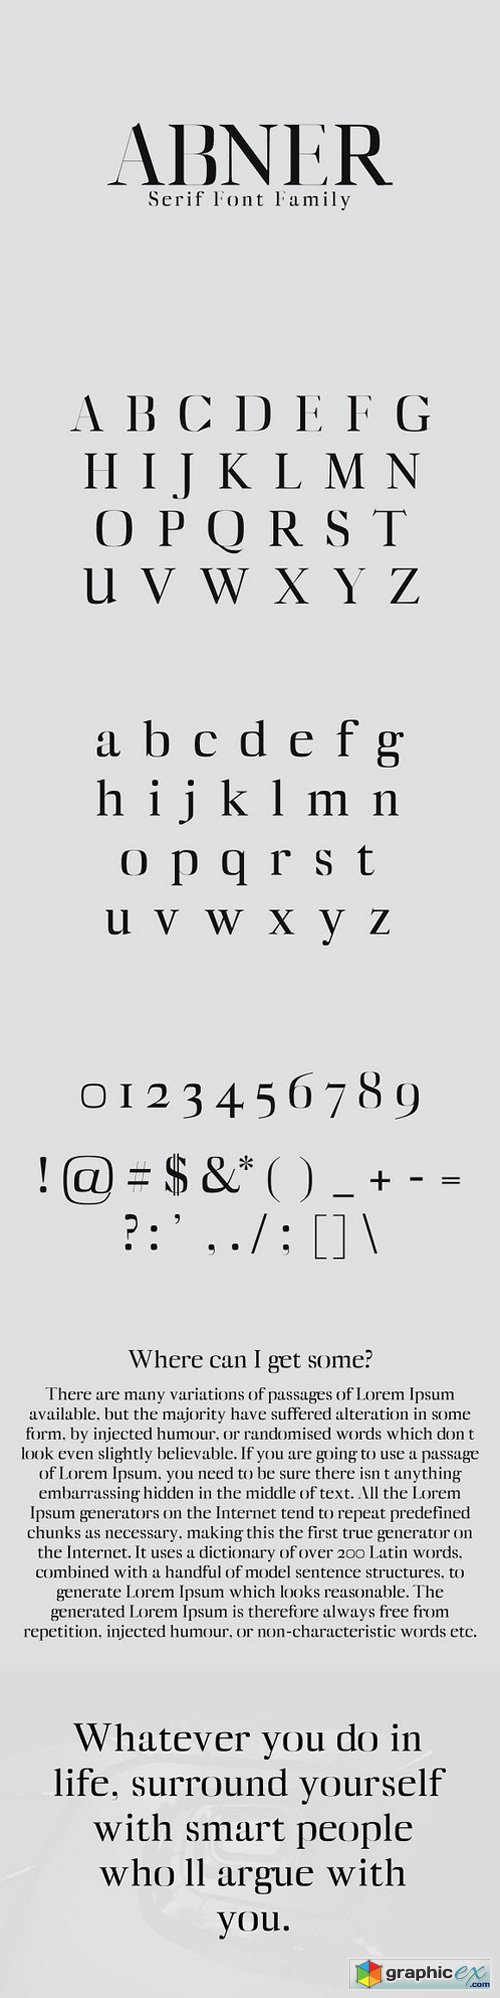 Abner Serif Font Family